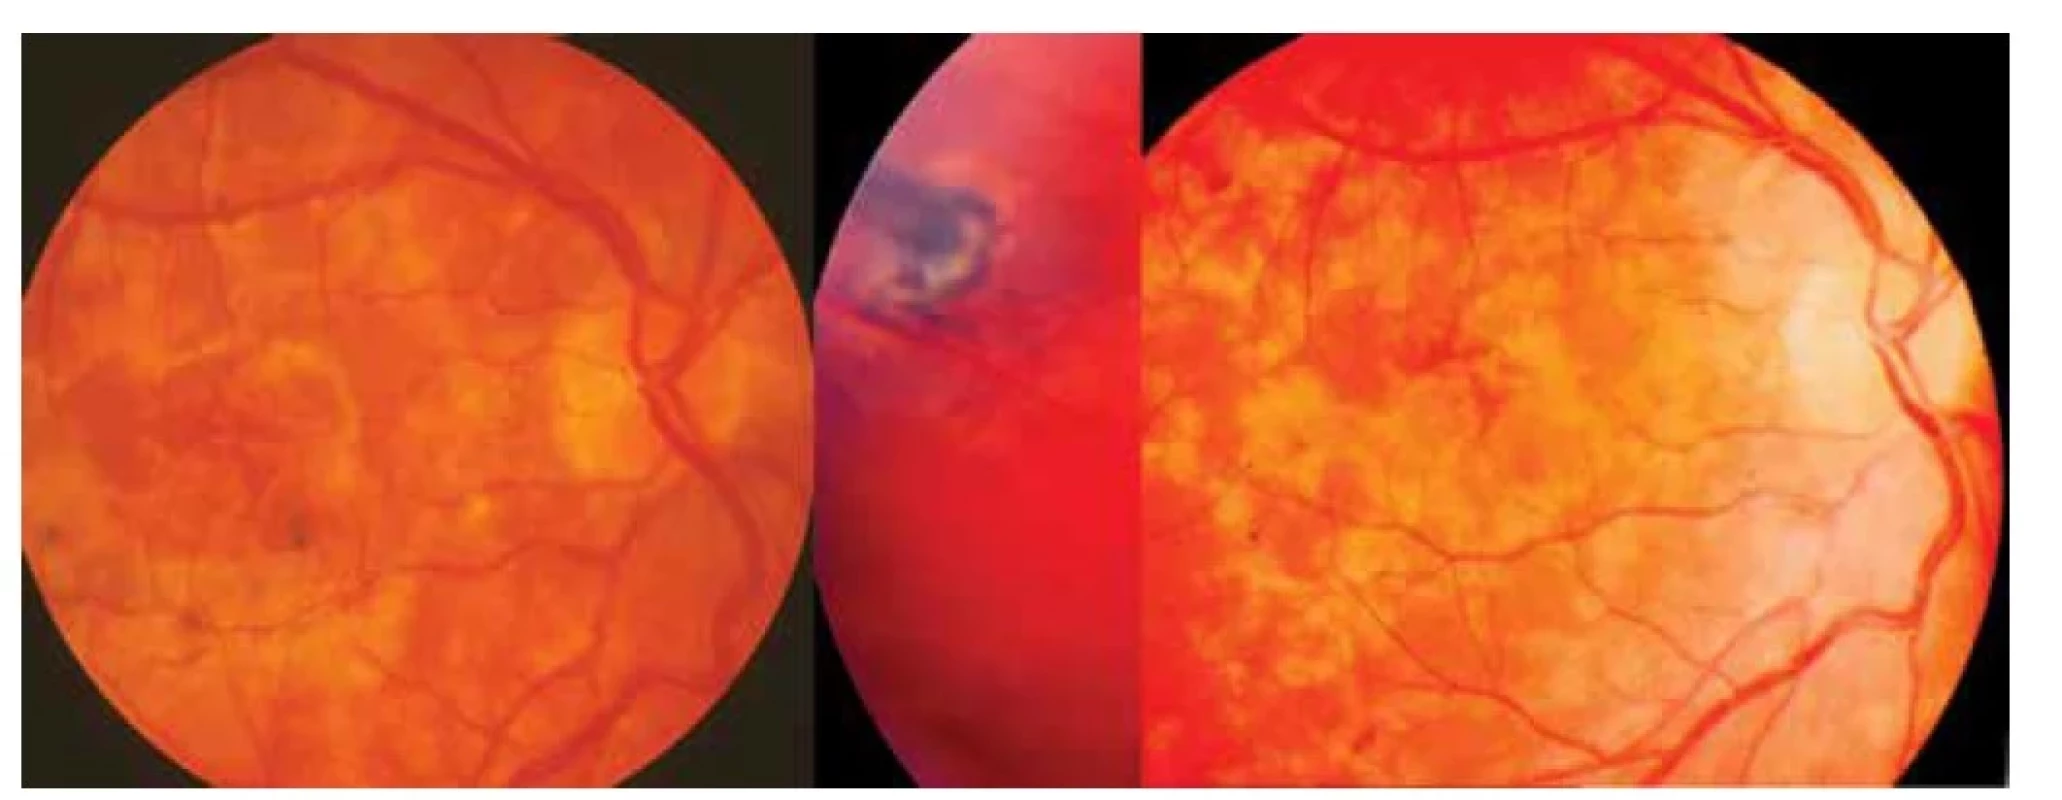 Vlevo: Klinický obraz prosáknutí centrální oblasti zadního pólu oka při DUSN toxokarové etiologie<br>
Uprostřed: Ojedinělá chorioretinální jizva v.s. po hlístu v průměru 1 PD s pigmentovou trakcí v temporální periferii po
kombinované léčbě<br>
Vpravo: Mapovité žlutavé zajizvení sítnice doprovázené částečnou atrofií zrakového nervu o půl roku později po kombinované
léčbě